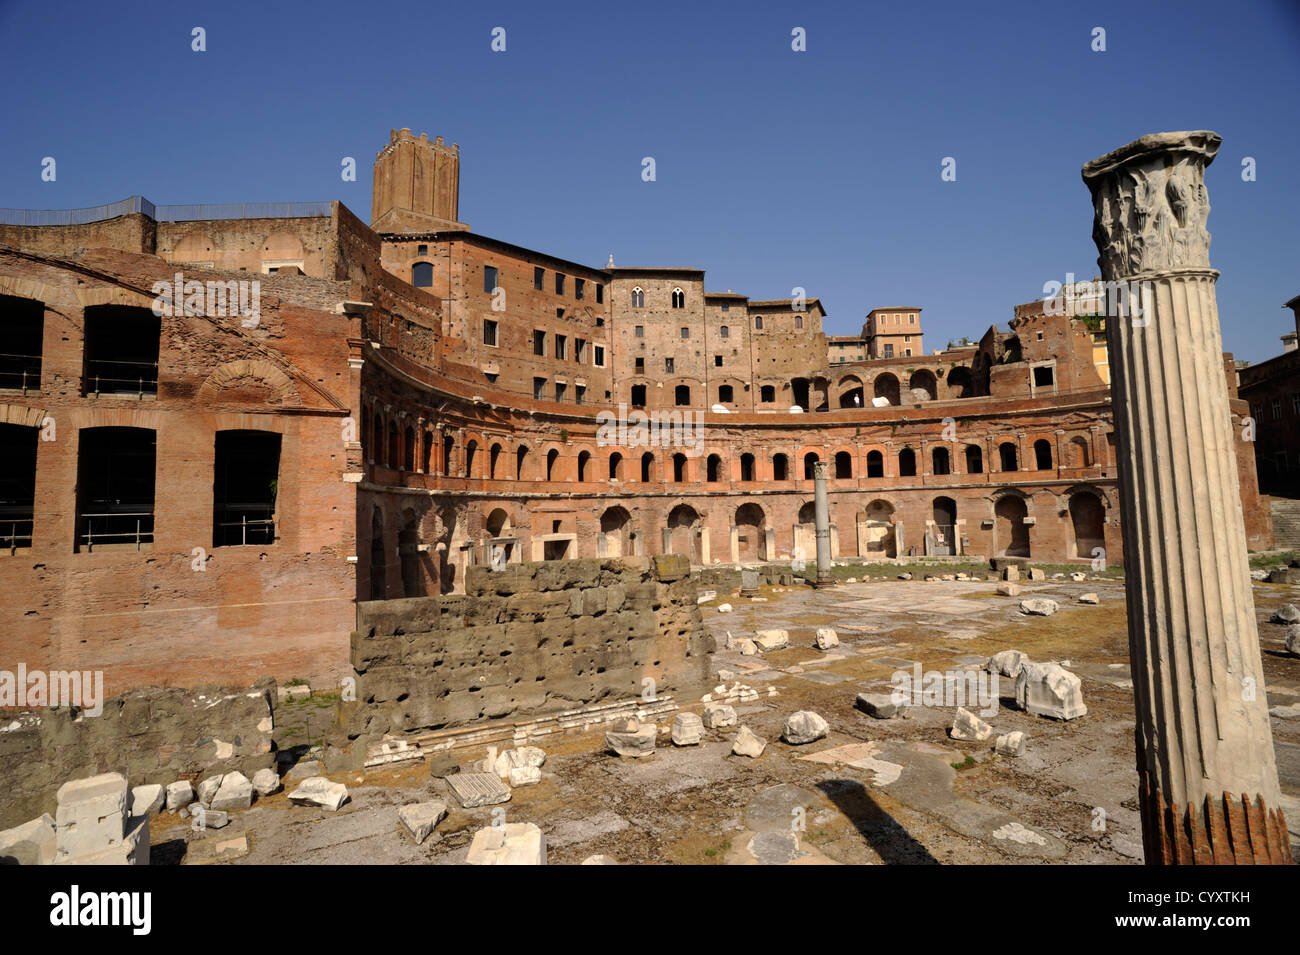 Italy, Rome, Trajan's markets Stock Photo